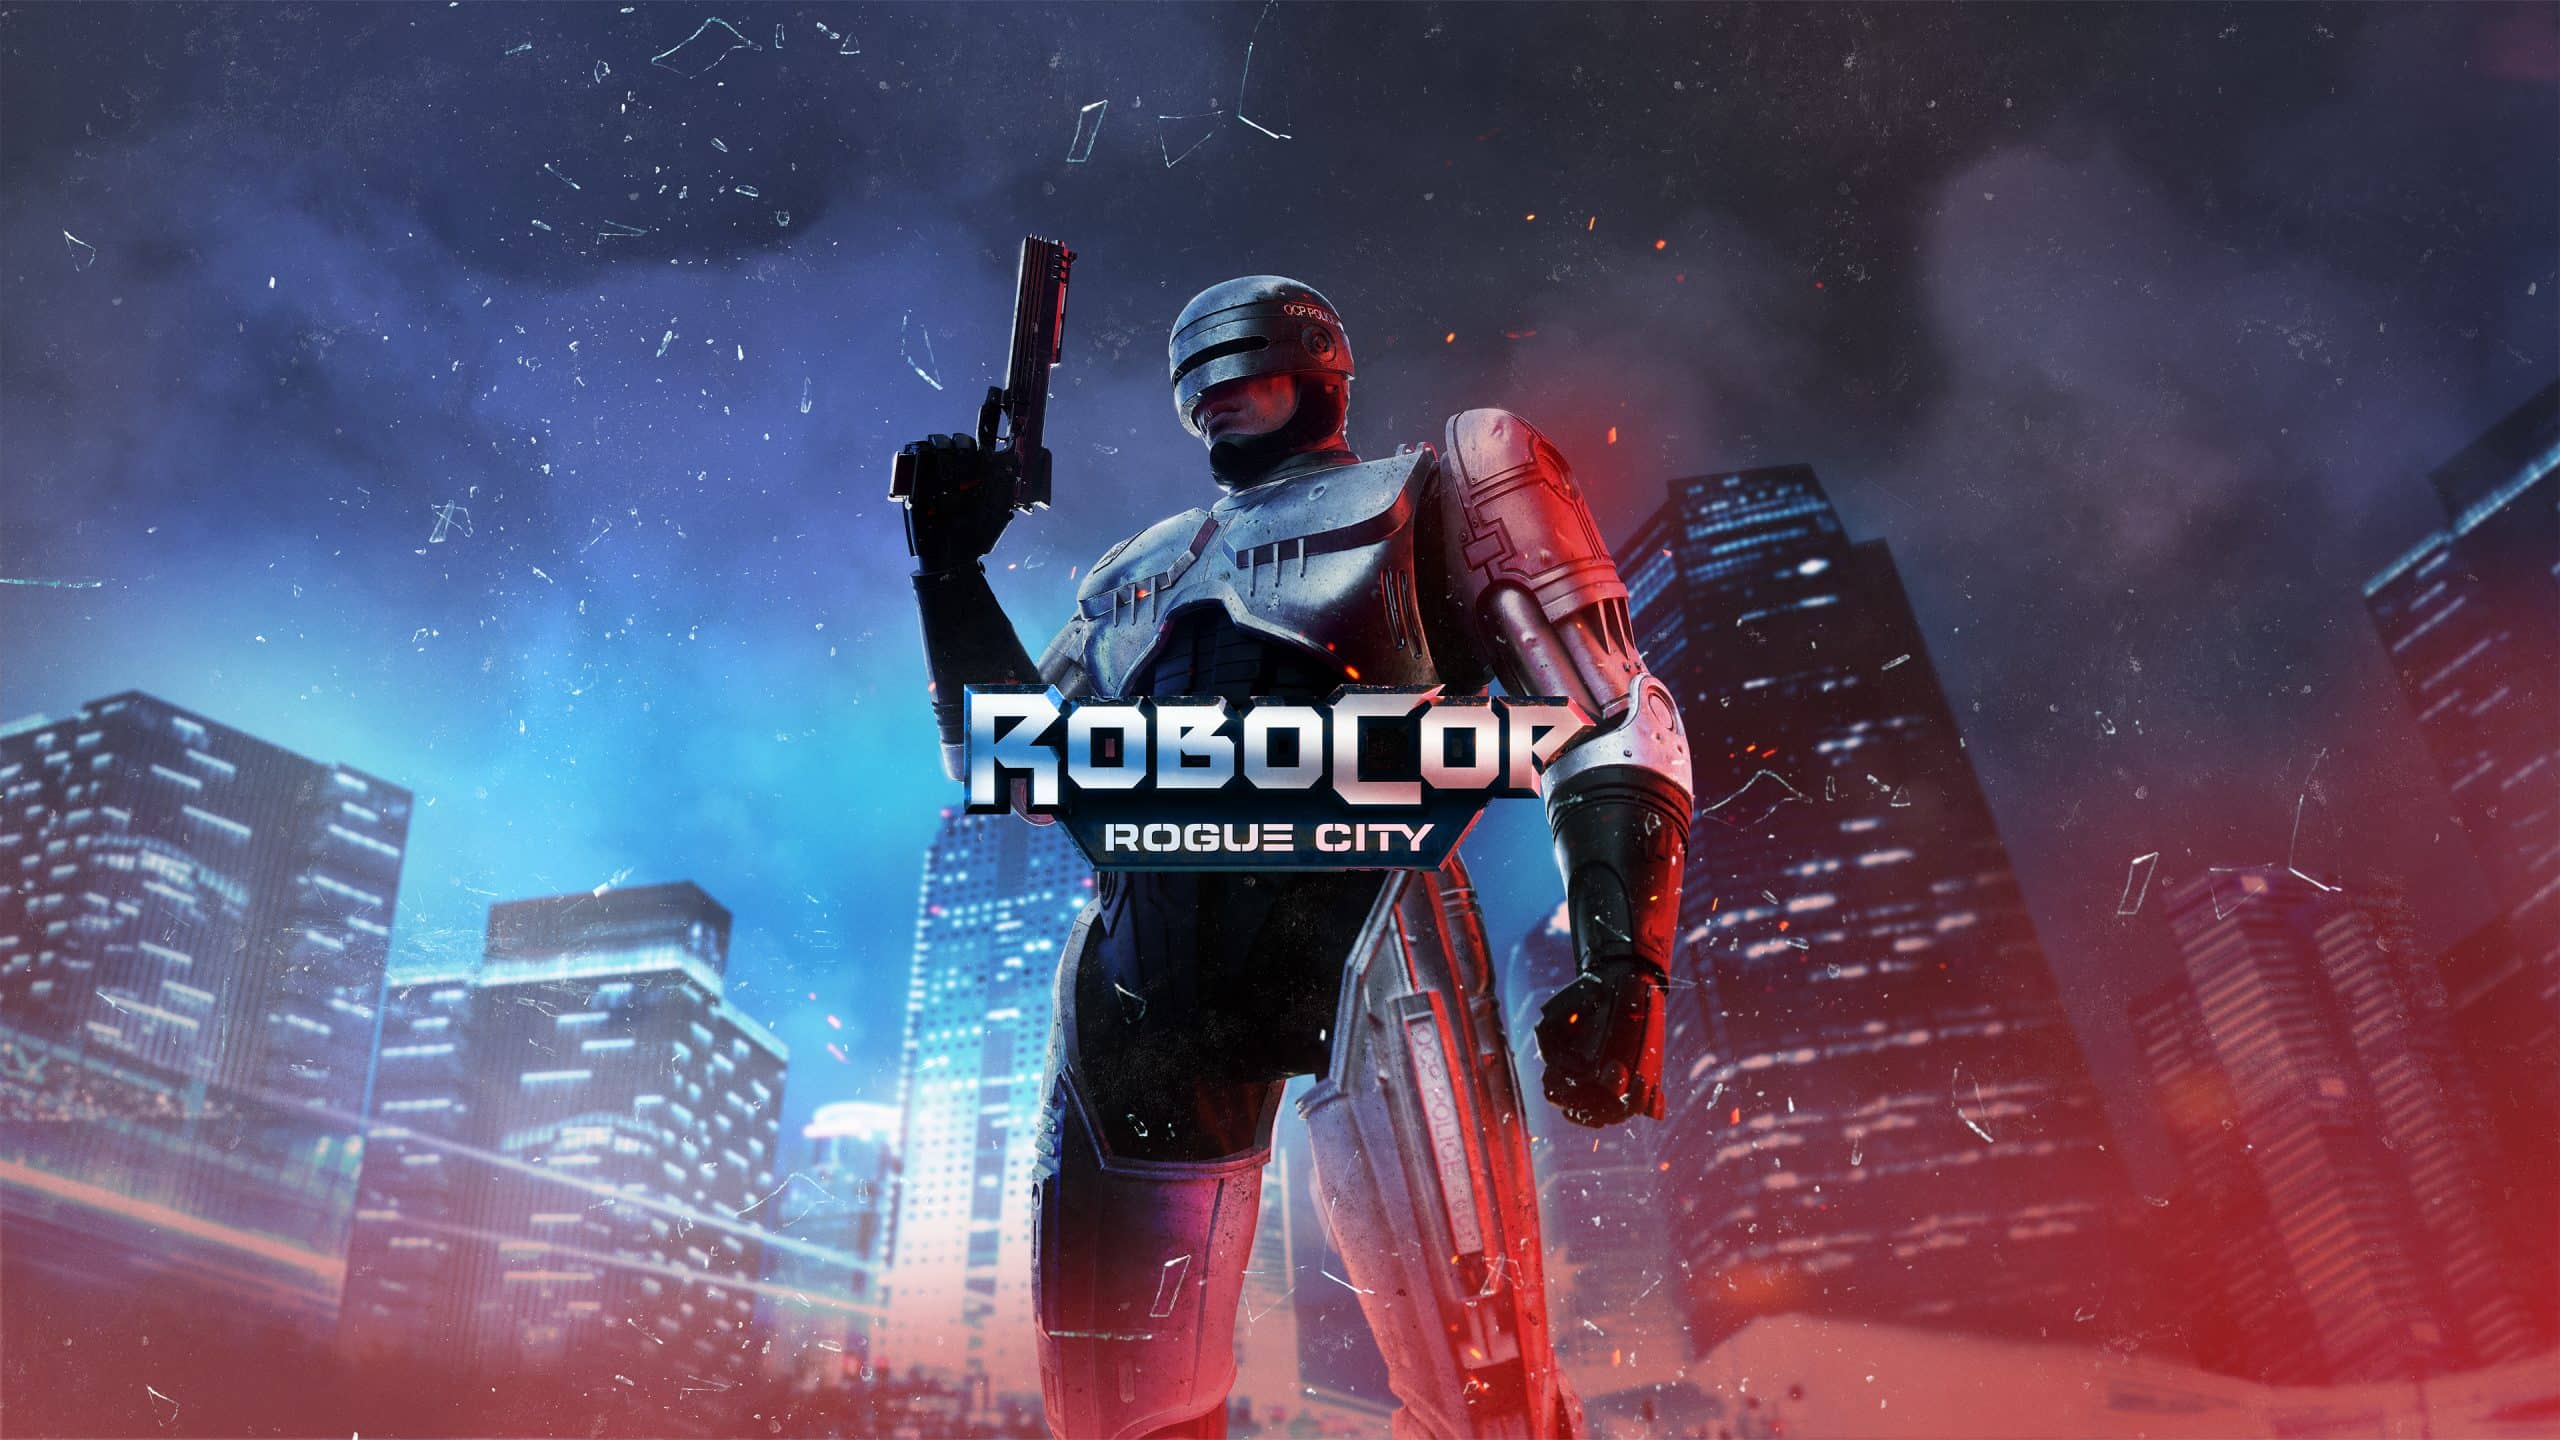 映画「RoboCop™」の世界を舞台とする新作アクションゲーム『RoboCop 